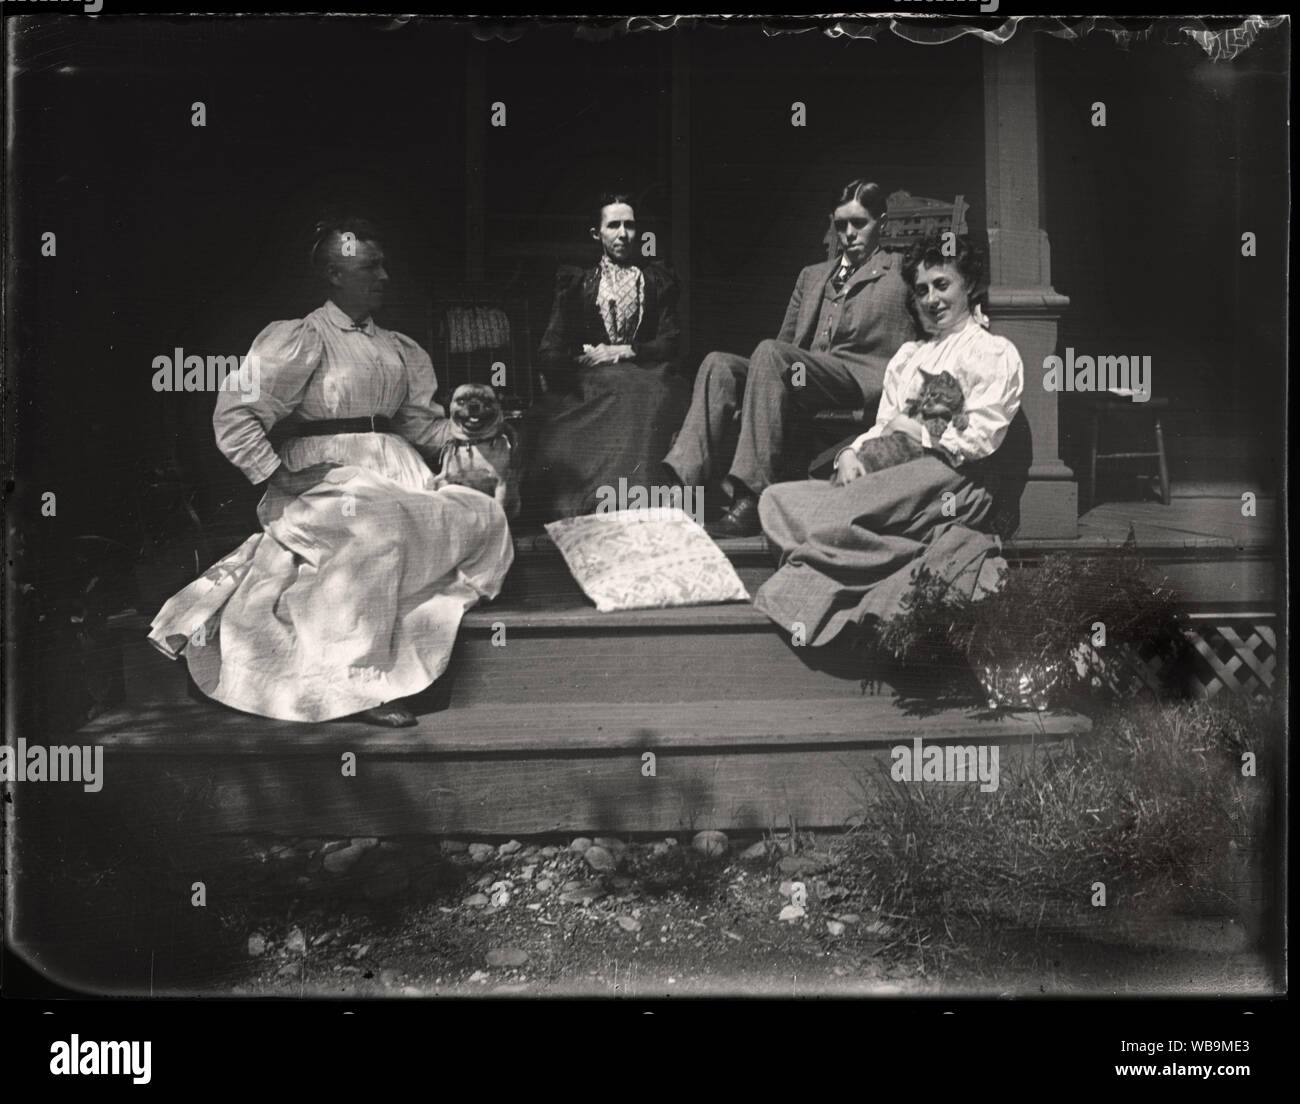 Amerikanische Familie mit Haustieren auf der Veranda, Anfang 1900. Von den ursprünglichen 3 x 4 Zoll Glasplatte Negative scannen. Stockfoto